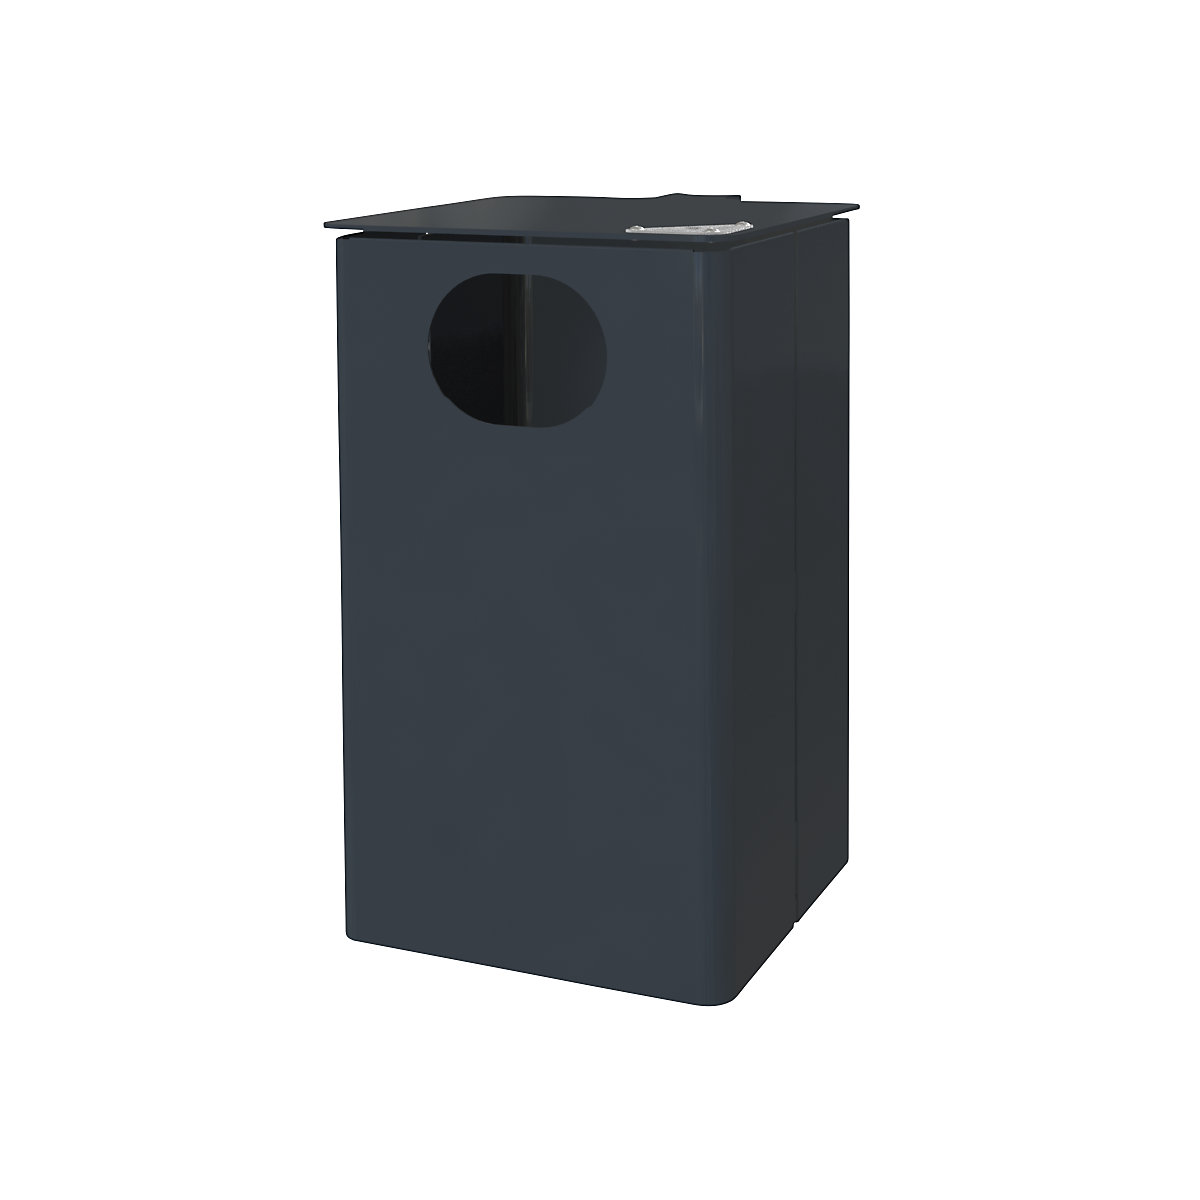 Combiné cendrier-poubelle d'extérieur, capacité 35 l, h x l x p 537 x 325 x 388 mm, anthracite-6